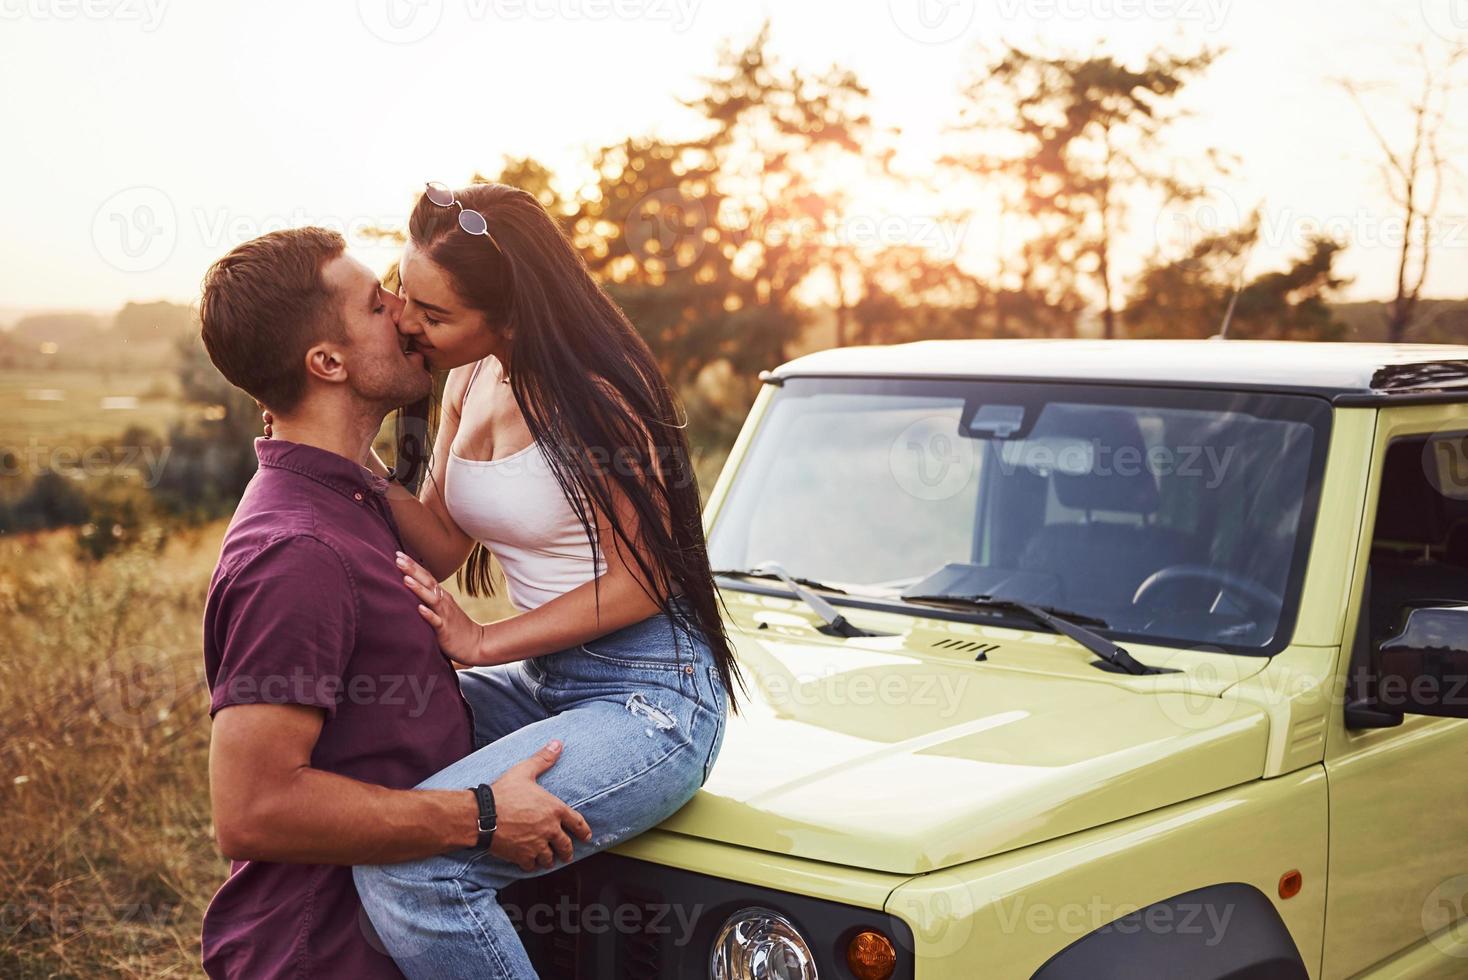 encantadora pareja besándose al aire libre. la chica se sienta en un jeep verde. hermosa tarde soleada foto